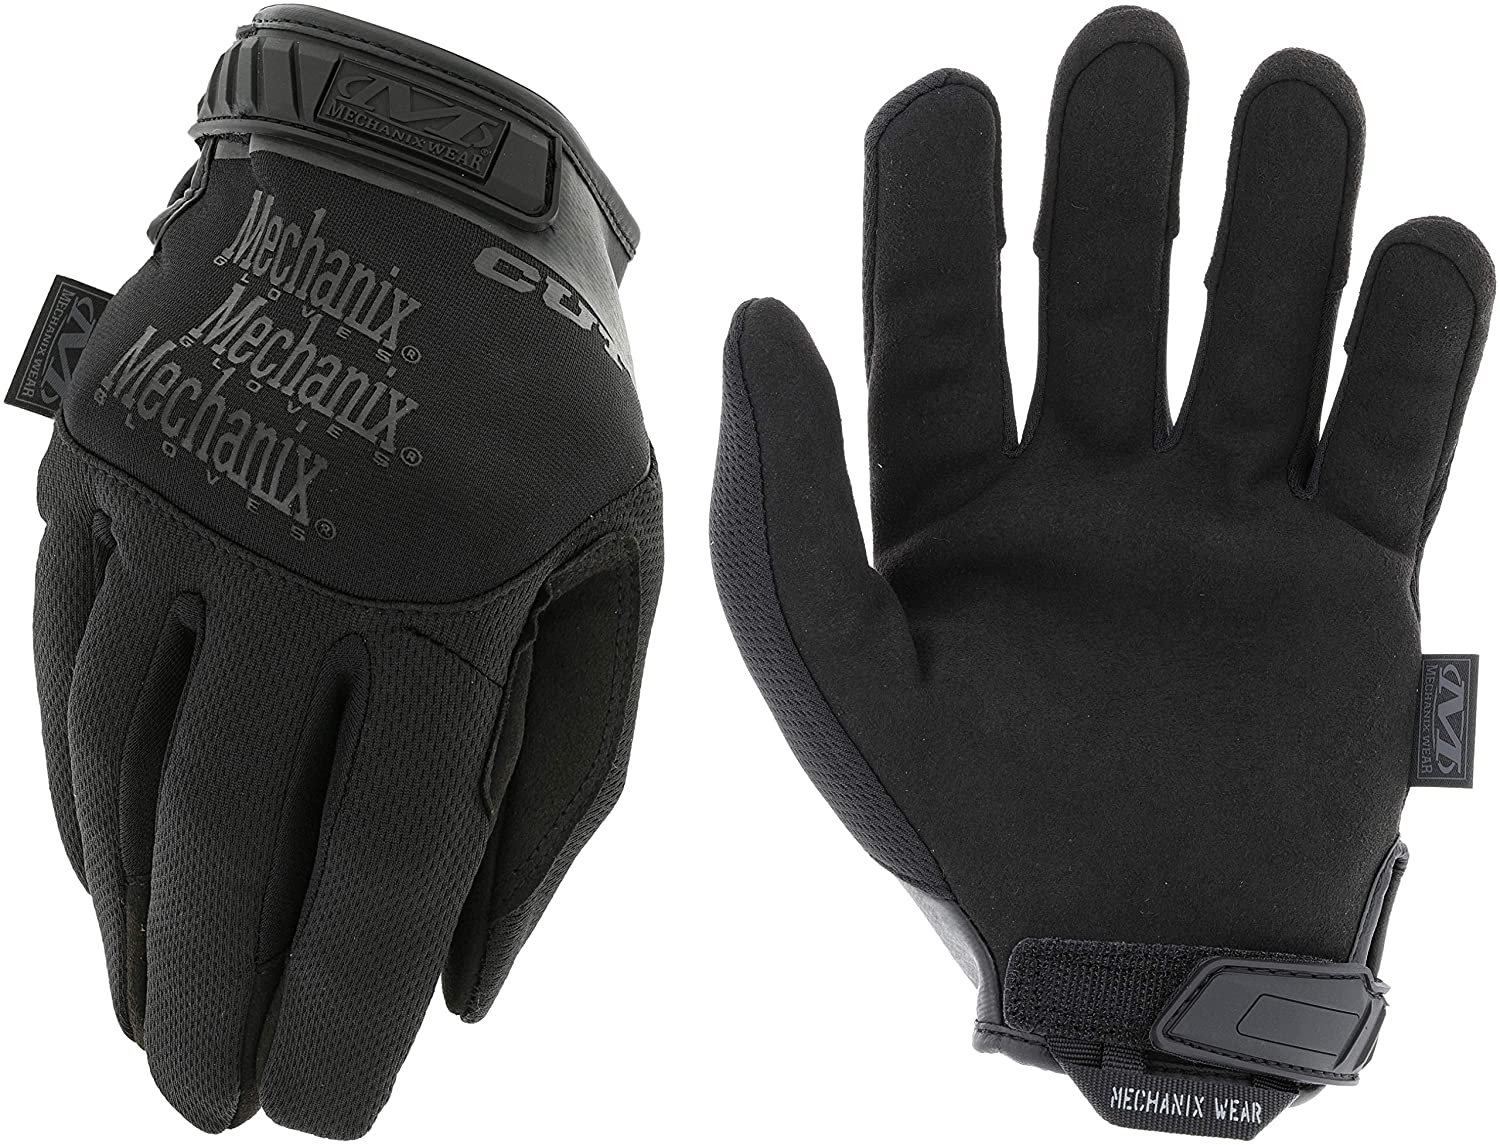 Pursuit CR5 Cut Resistant Gloves